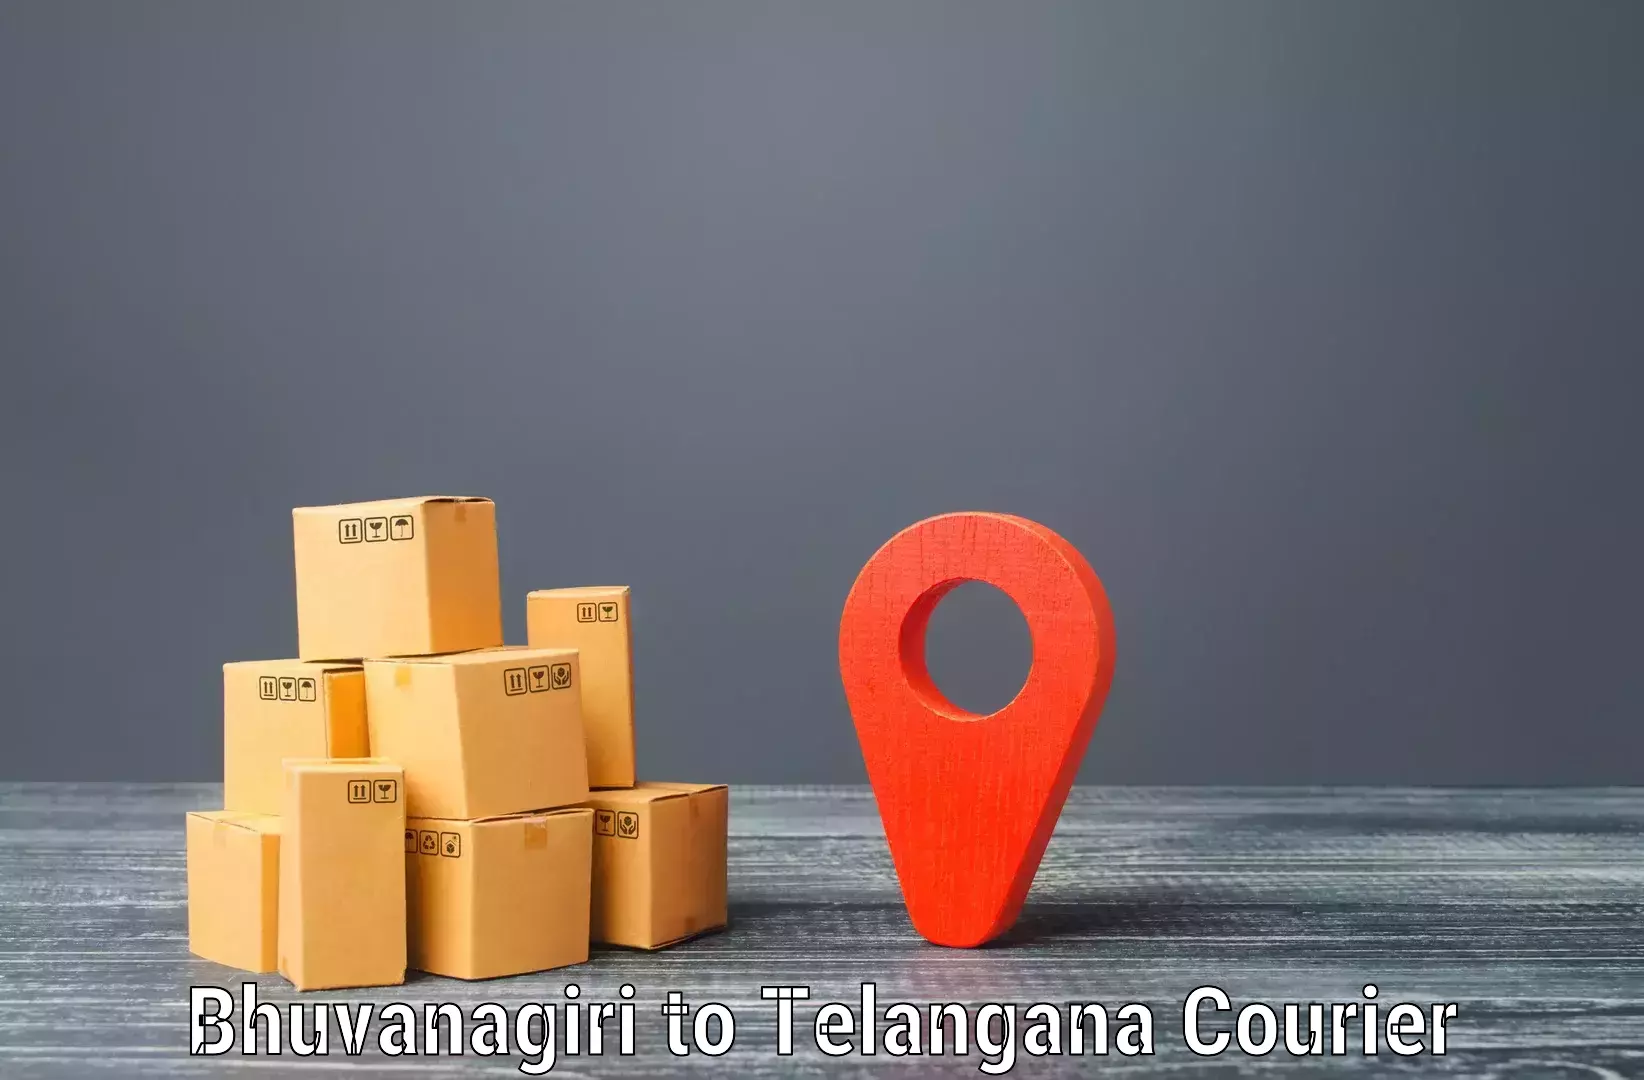 Shipping and handling Bhuvanagiri to Pregnapur